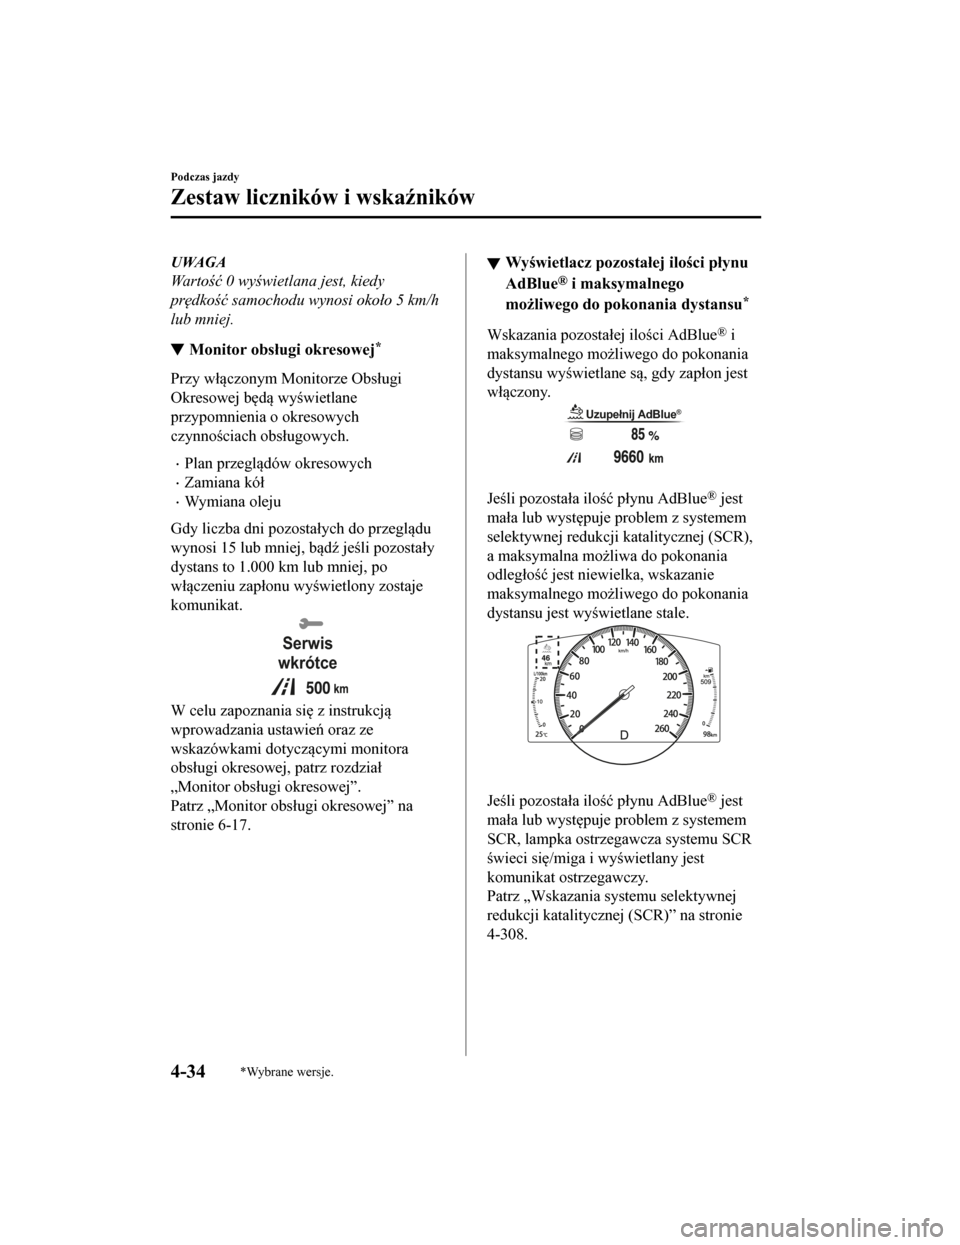 MAZDA MODEL CX-5 2019  Instrukcja Obsługi (in Polish) UWAGA
Wa r t ość 0 wy świetlana jest, kiedy
pr ędkość  samochodu wynosi oko ło 5 km/h
lub mniej.
Monitor obsługi okresowej*
Przy włączonym Monitorze Obsługi
Okresowej będą wyświetlane
pr